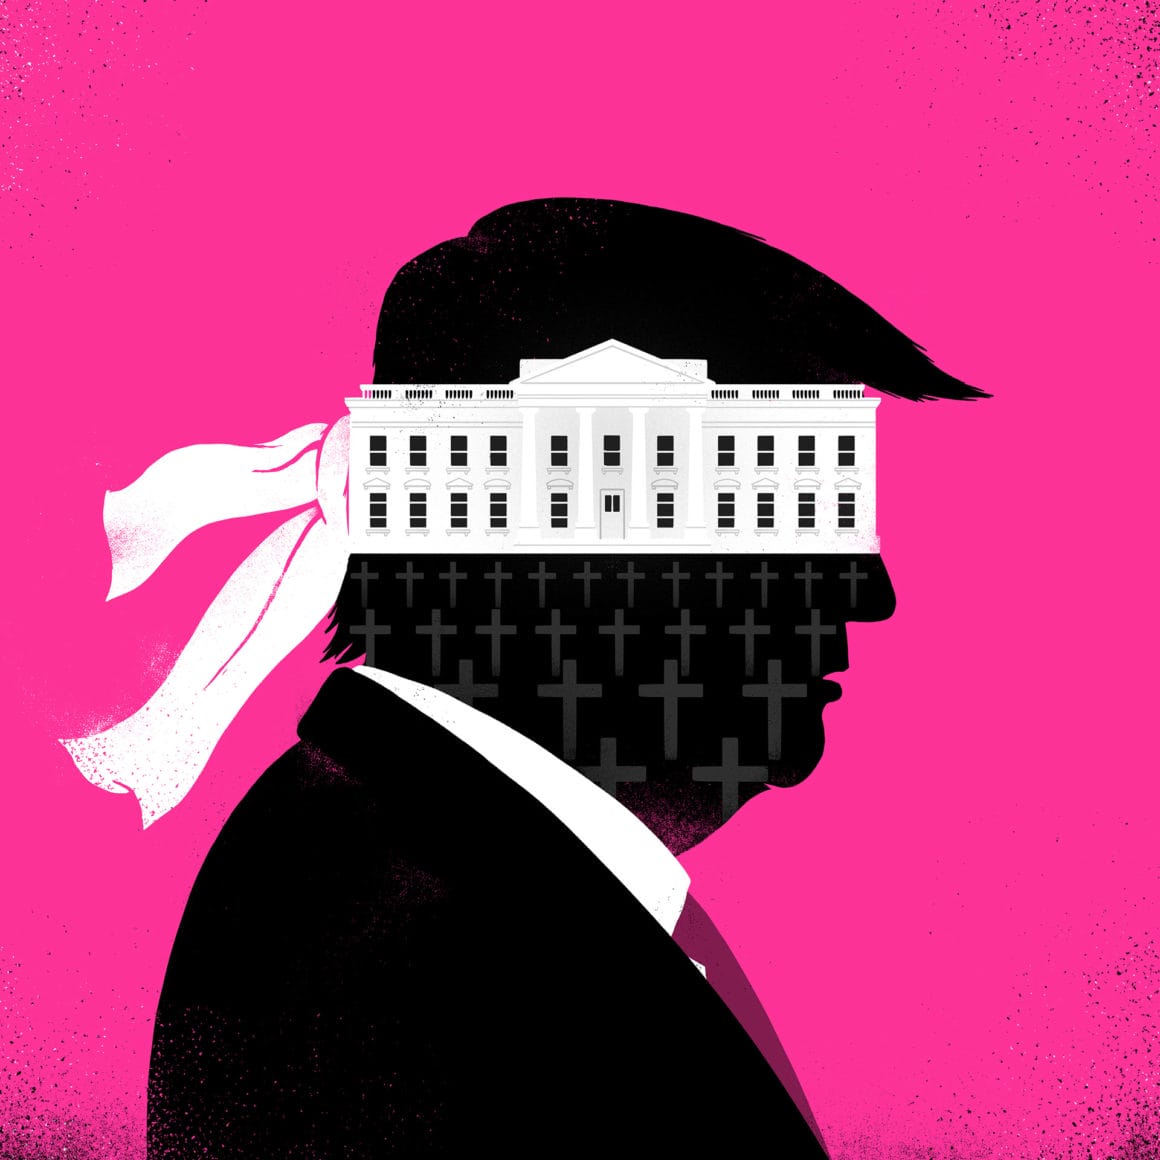 Sur fond rose, le profil de Trump est poché en noir et à l'intérieur de ce profil il y a le Capitole ainsi que des croix tombales.